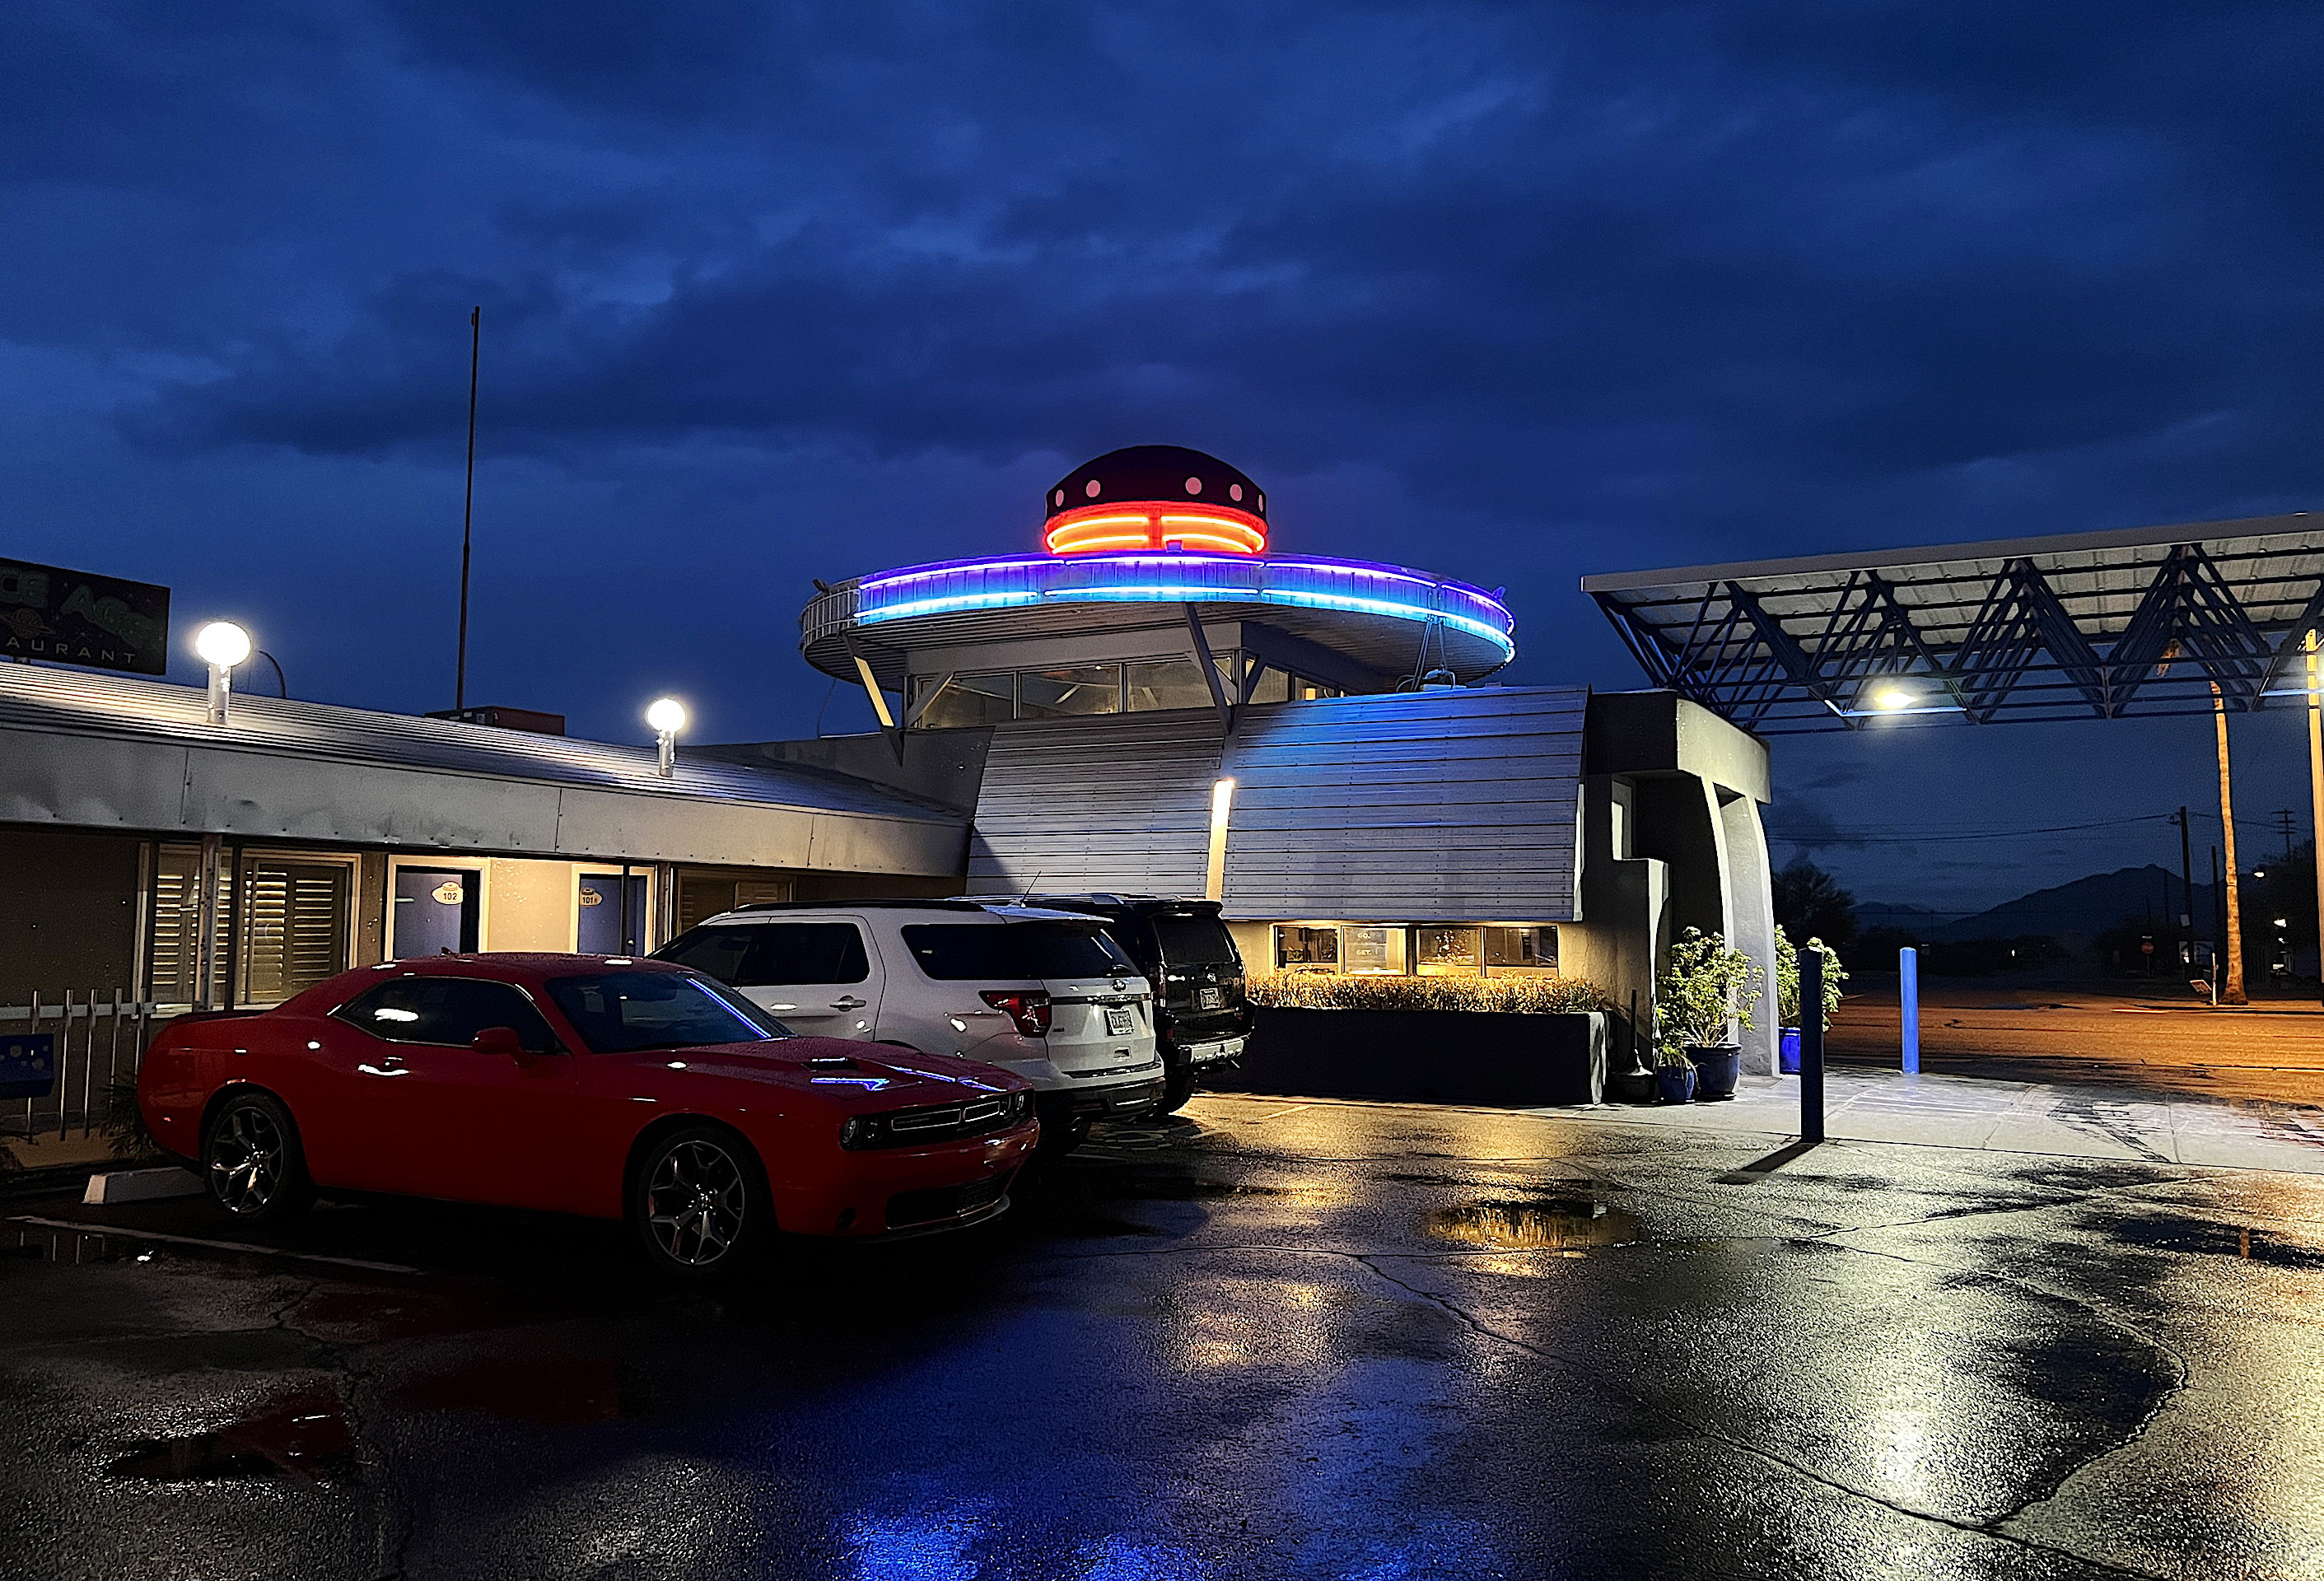 Blick auf das im nächtlichen Licht liegende Hotelgebäude mit dem markanten Aufsatz, der wie ein UFO aussieht. Das Licht spiegelt sich in den Pfützen auf dem Parkplatz, wo mehrere Autos parkiert sind.